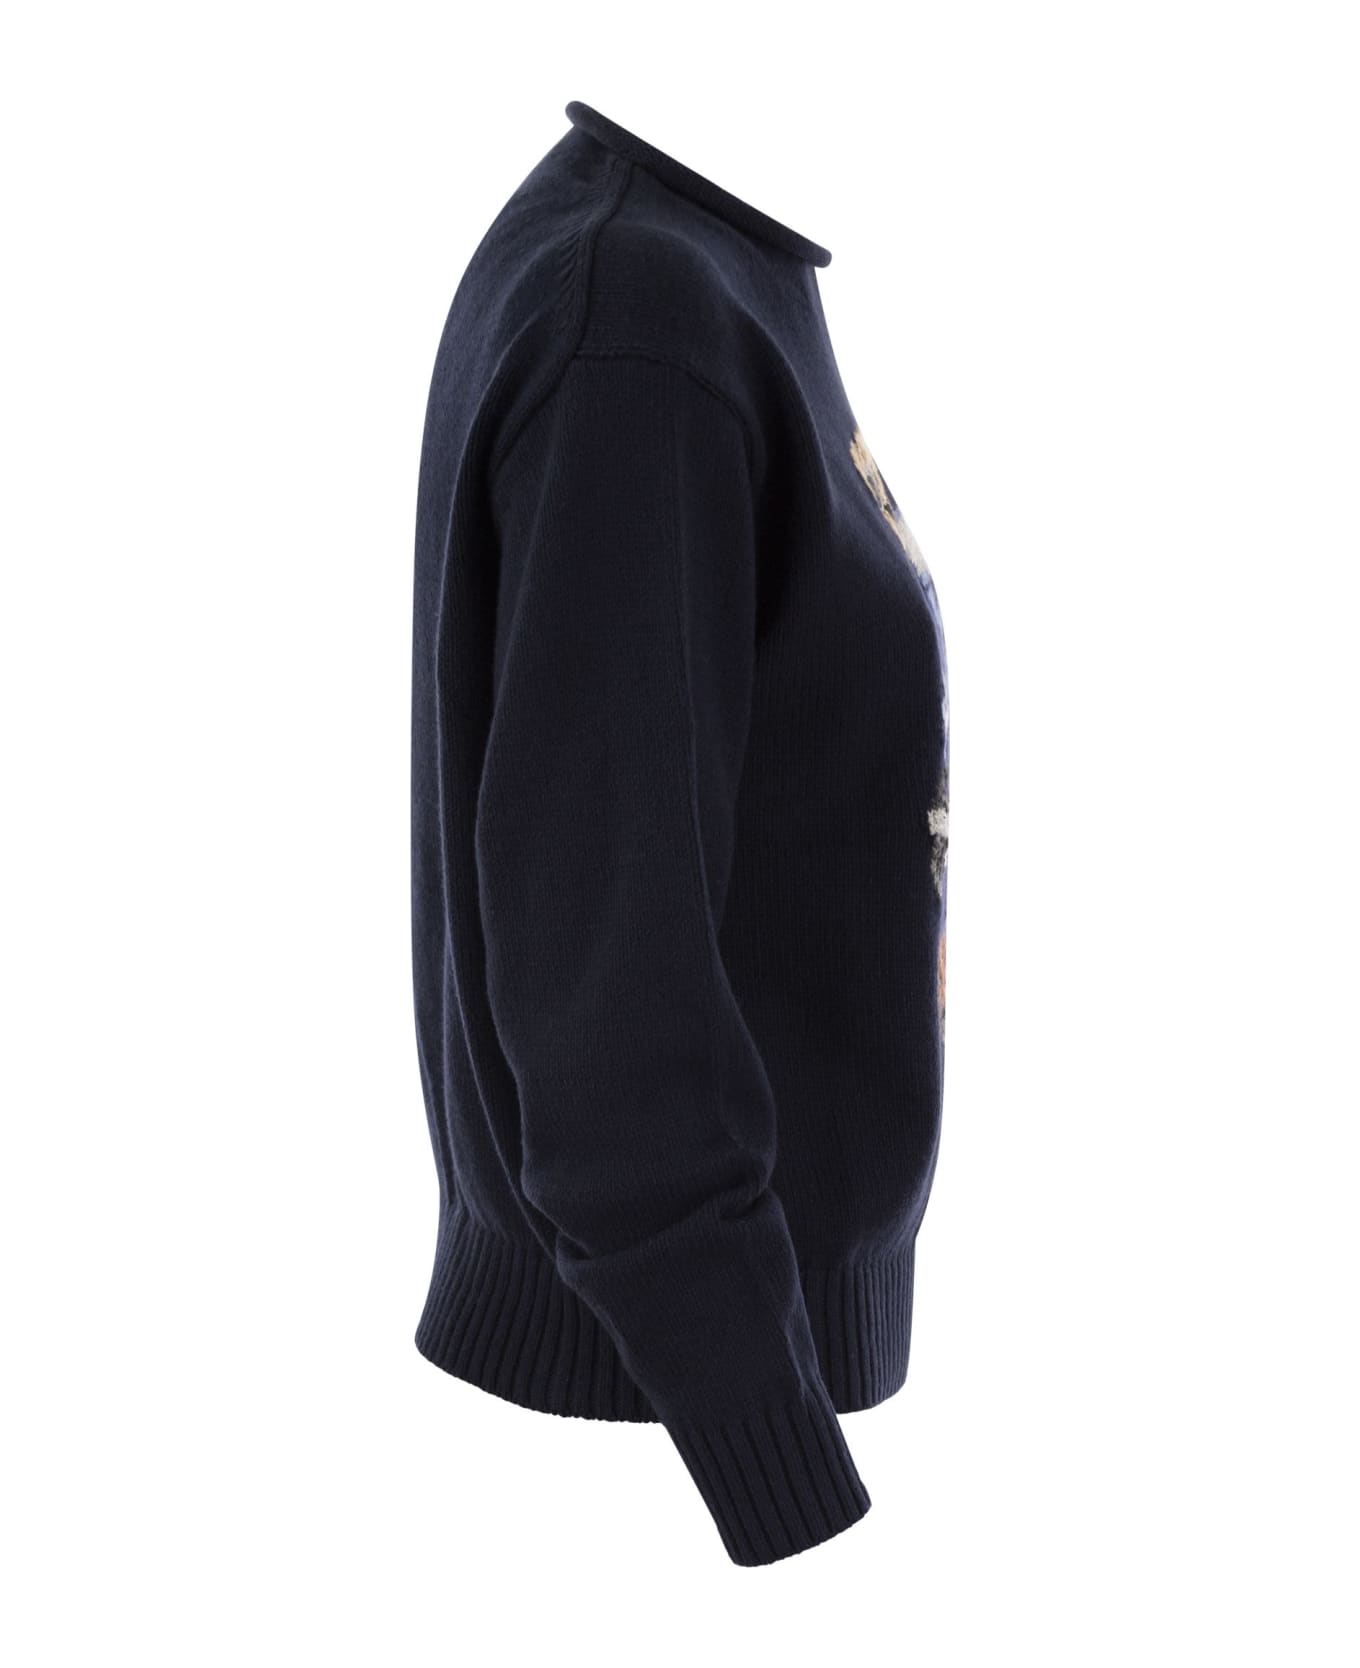 Polo Ralph Lauren Navy Blue Cotton Sweater - AVIATORNAVY フリース